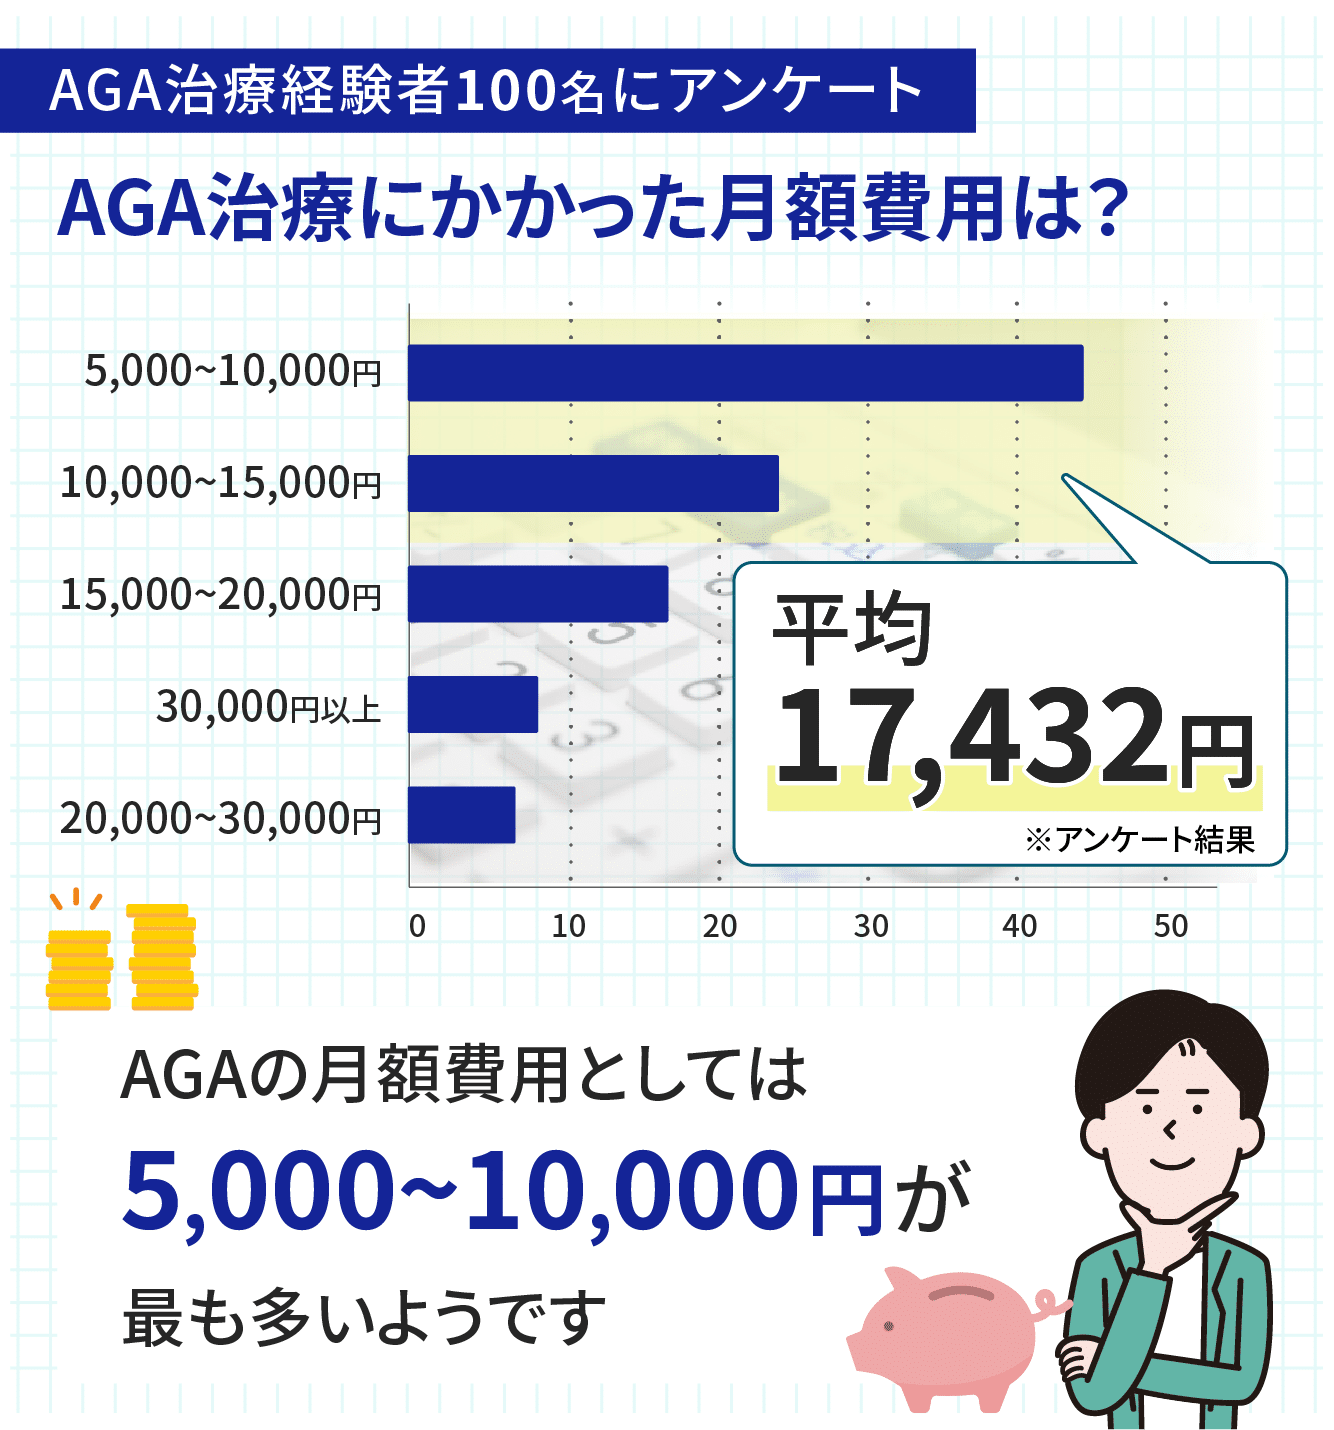 AGA治療にかかる平均費用は約17,000円/月